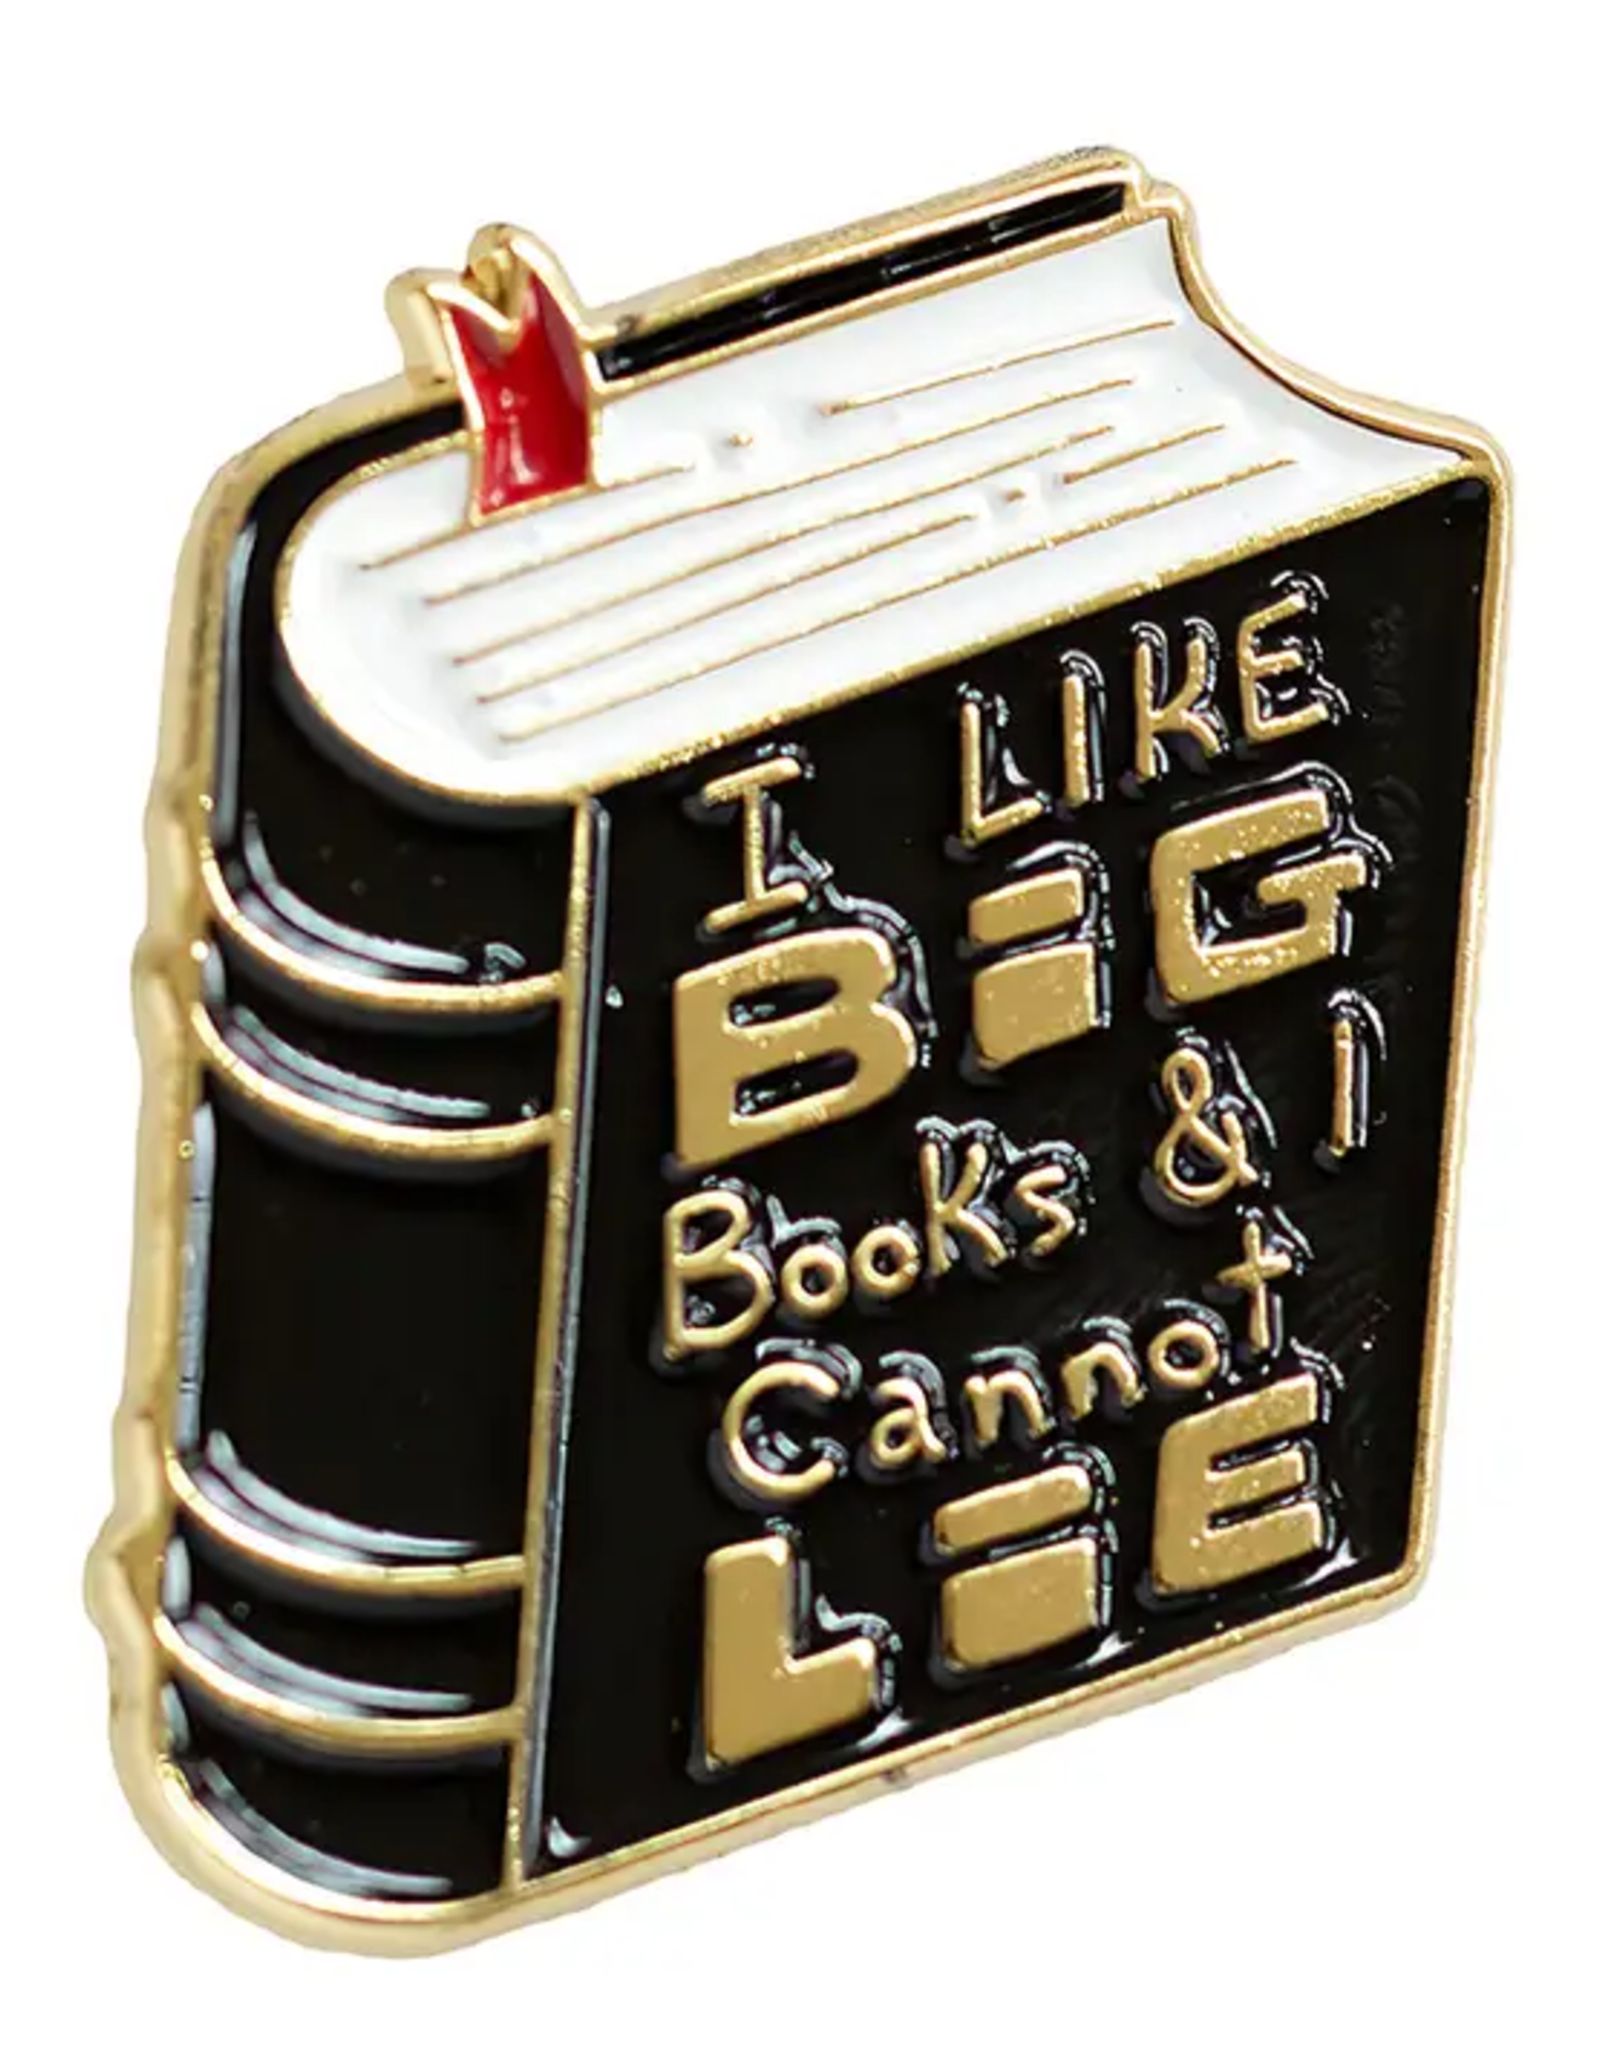 -"I Like Big Books and I Cannot Lie" Enamel Pin